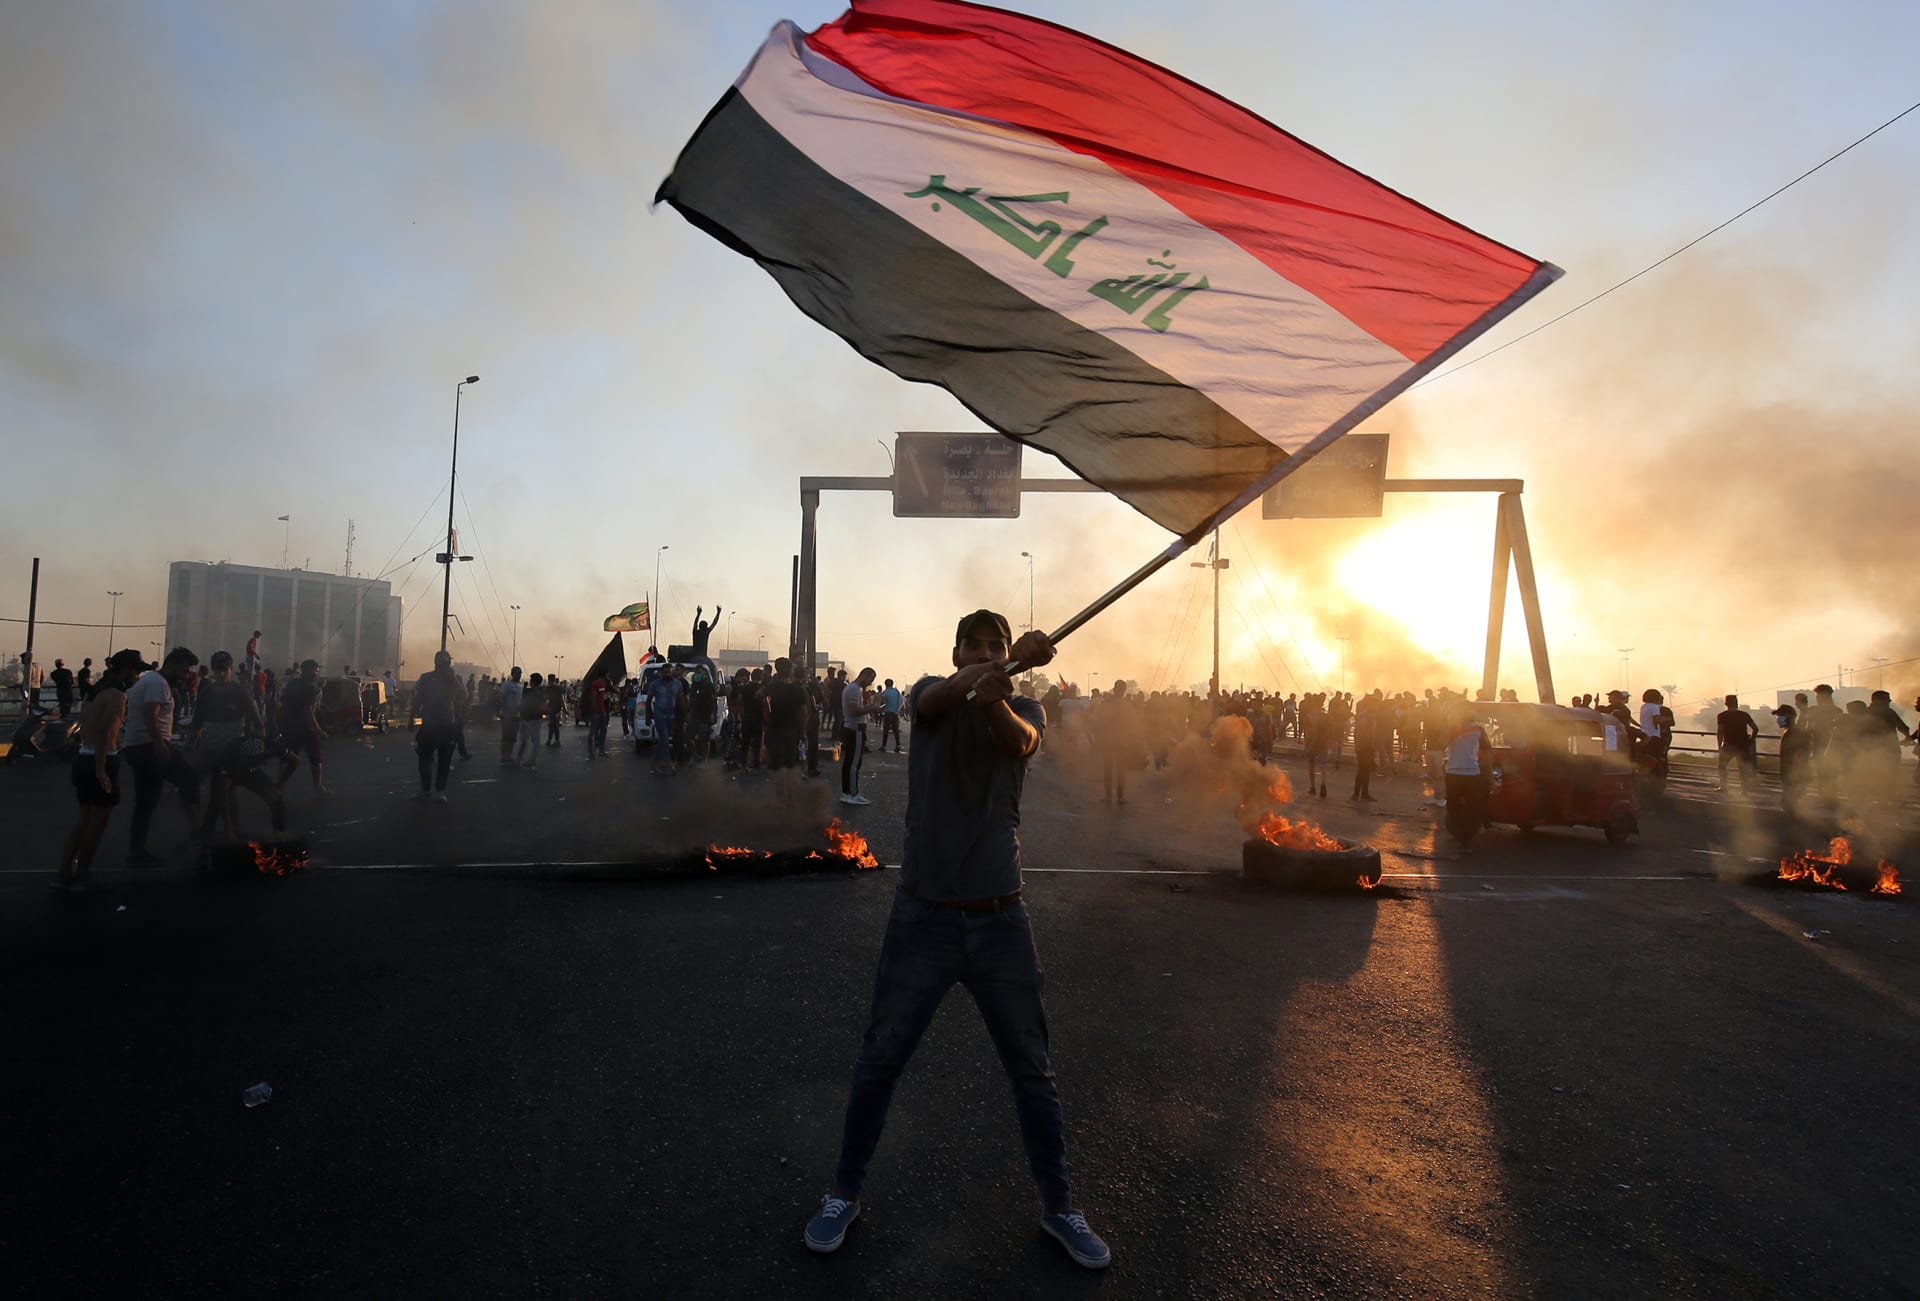 مرشد الثورة الإيرانية يكسر صمته تجاه احتجاجات العراق: "مؤامرة" لن تفرق طهران وبغداد